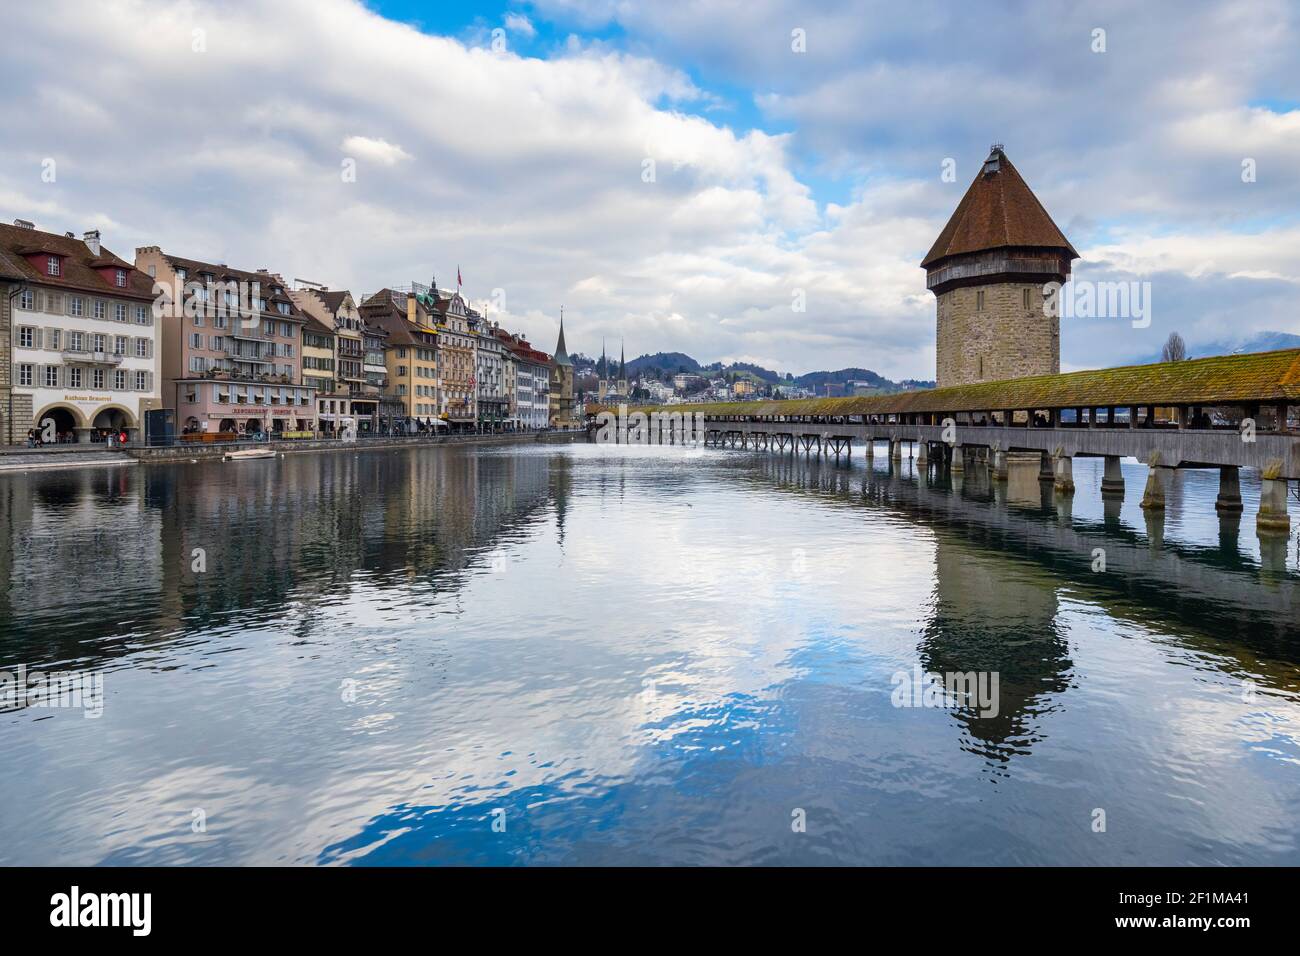 Blick auf die Kapellbrücke und den Wasserturm vom rathaussteg auf der Reuss. Luzern, Kanton Luzern, Schweiz. Stockfoto